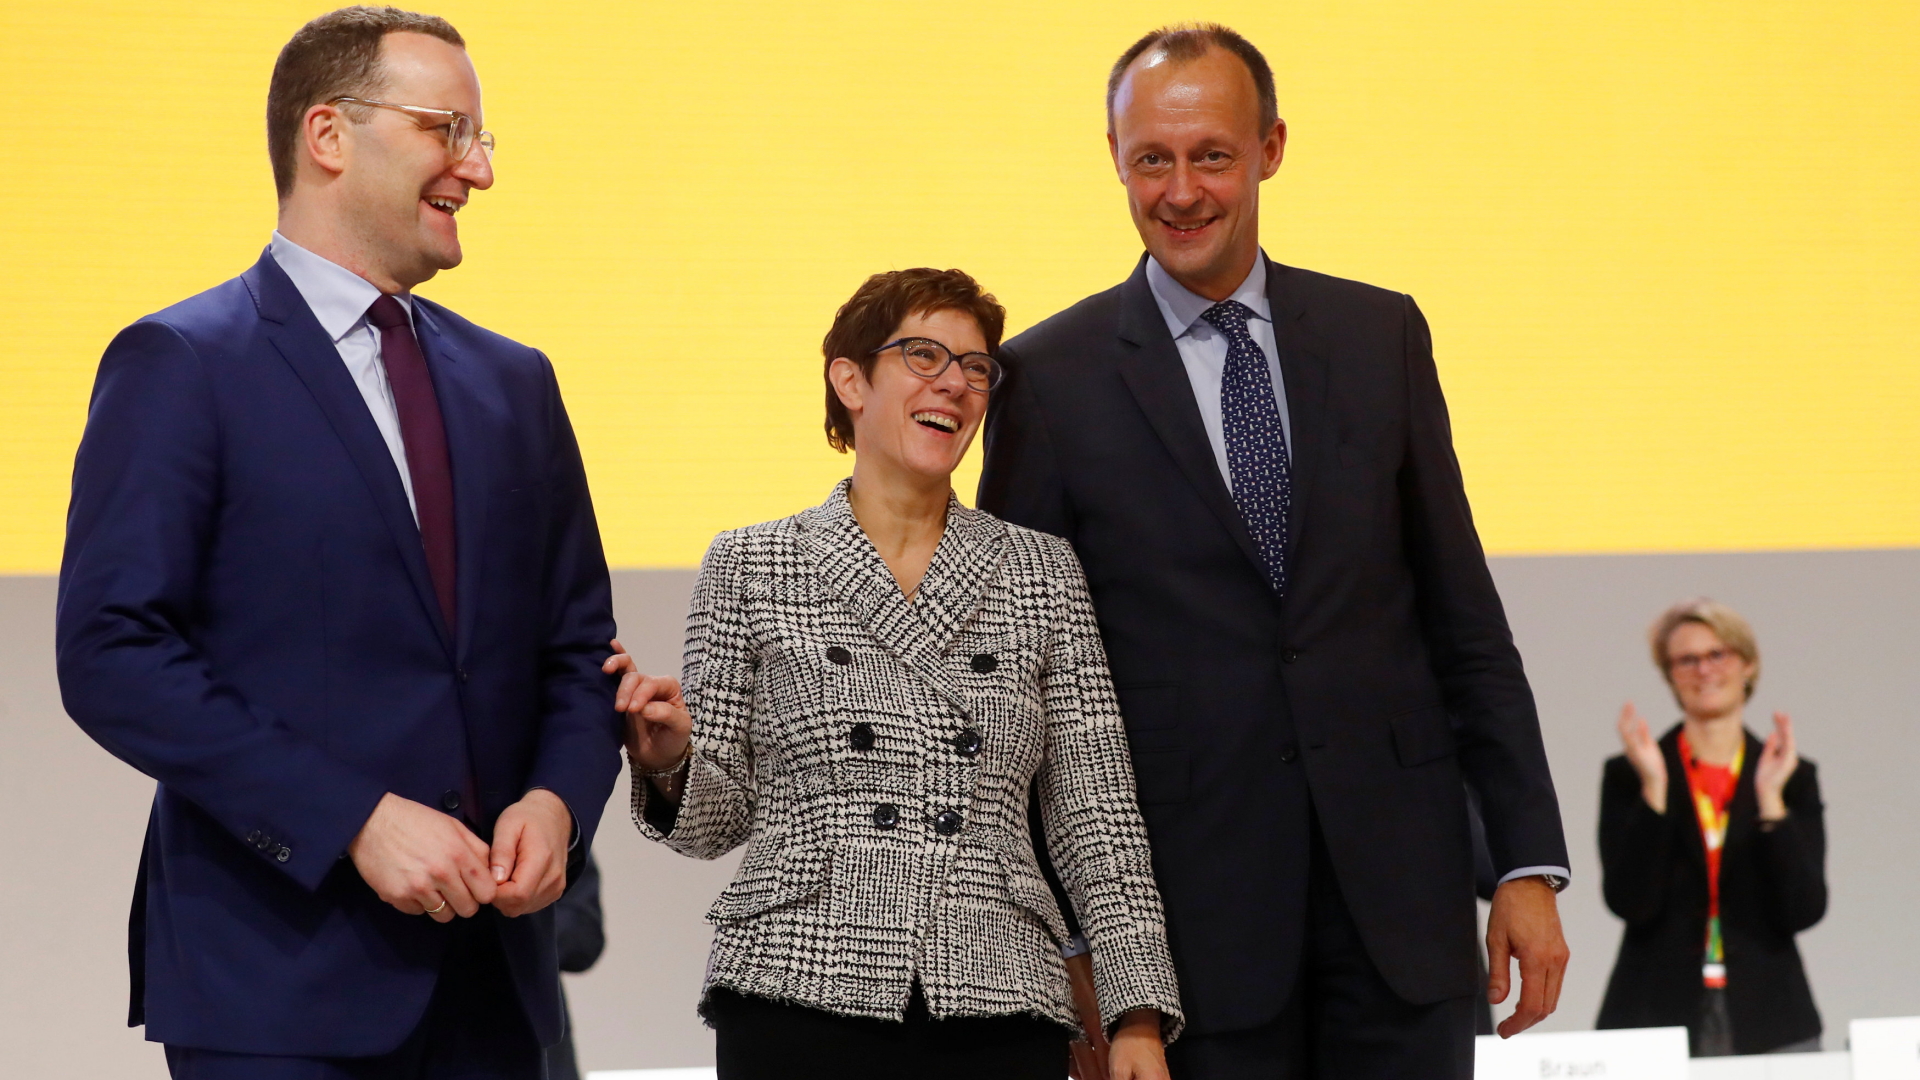 Jens Spahn, Annegret Kramp-Karrenbauer und Friedrich Merz (von li. nach re.) auf dem Parteitag in Hamburg | Bildquelle: REUTERS